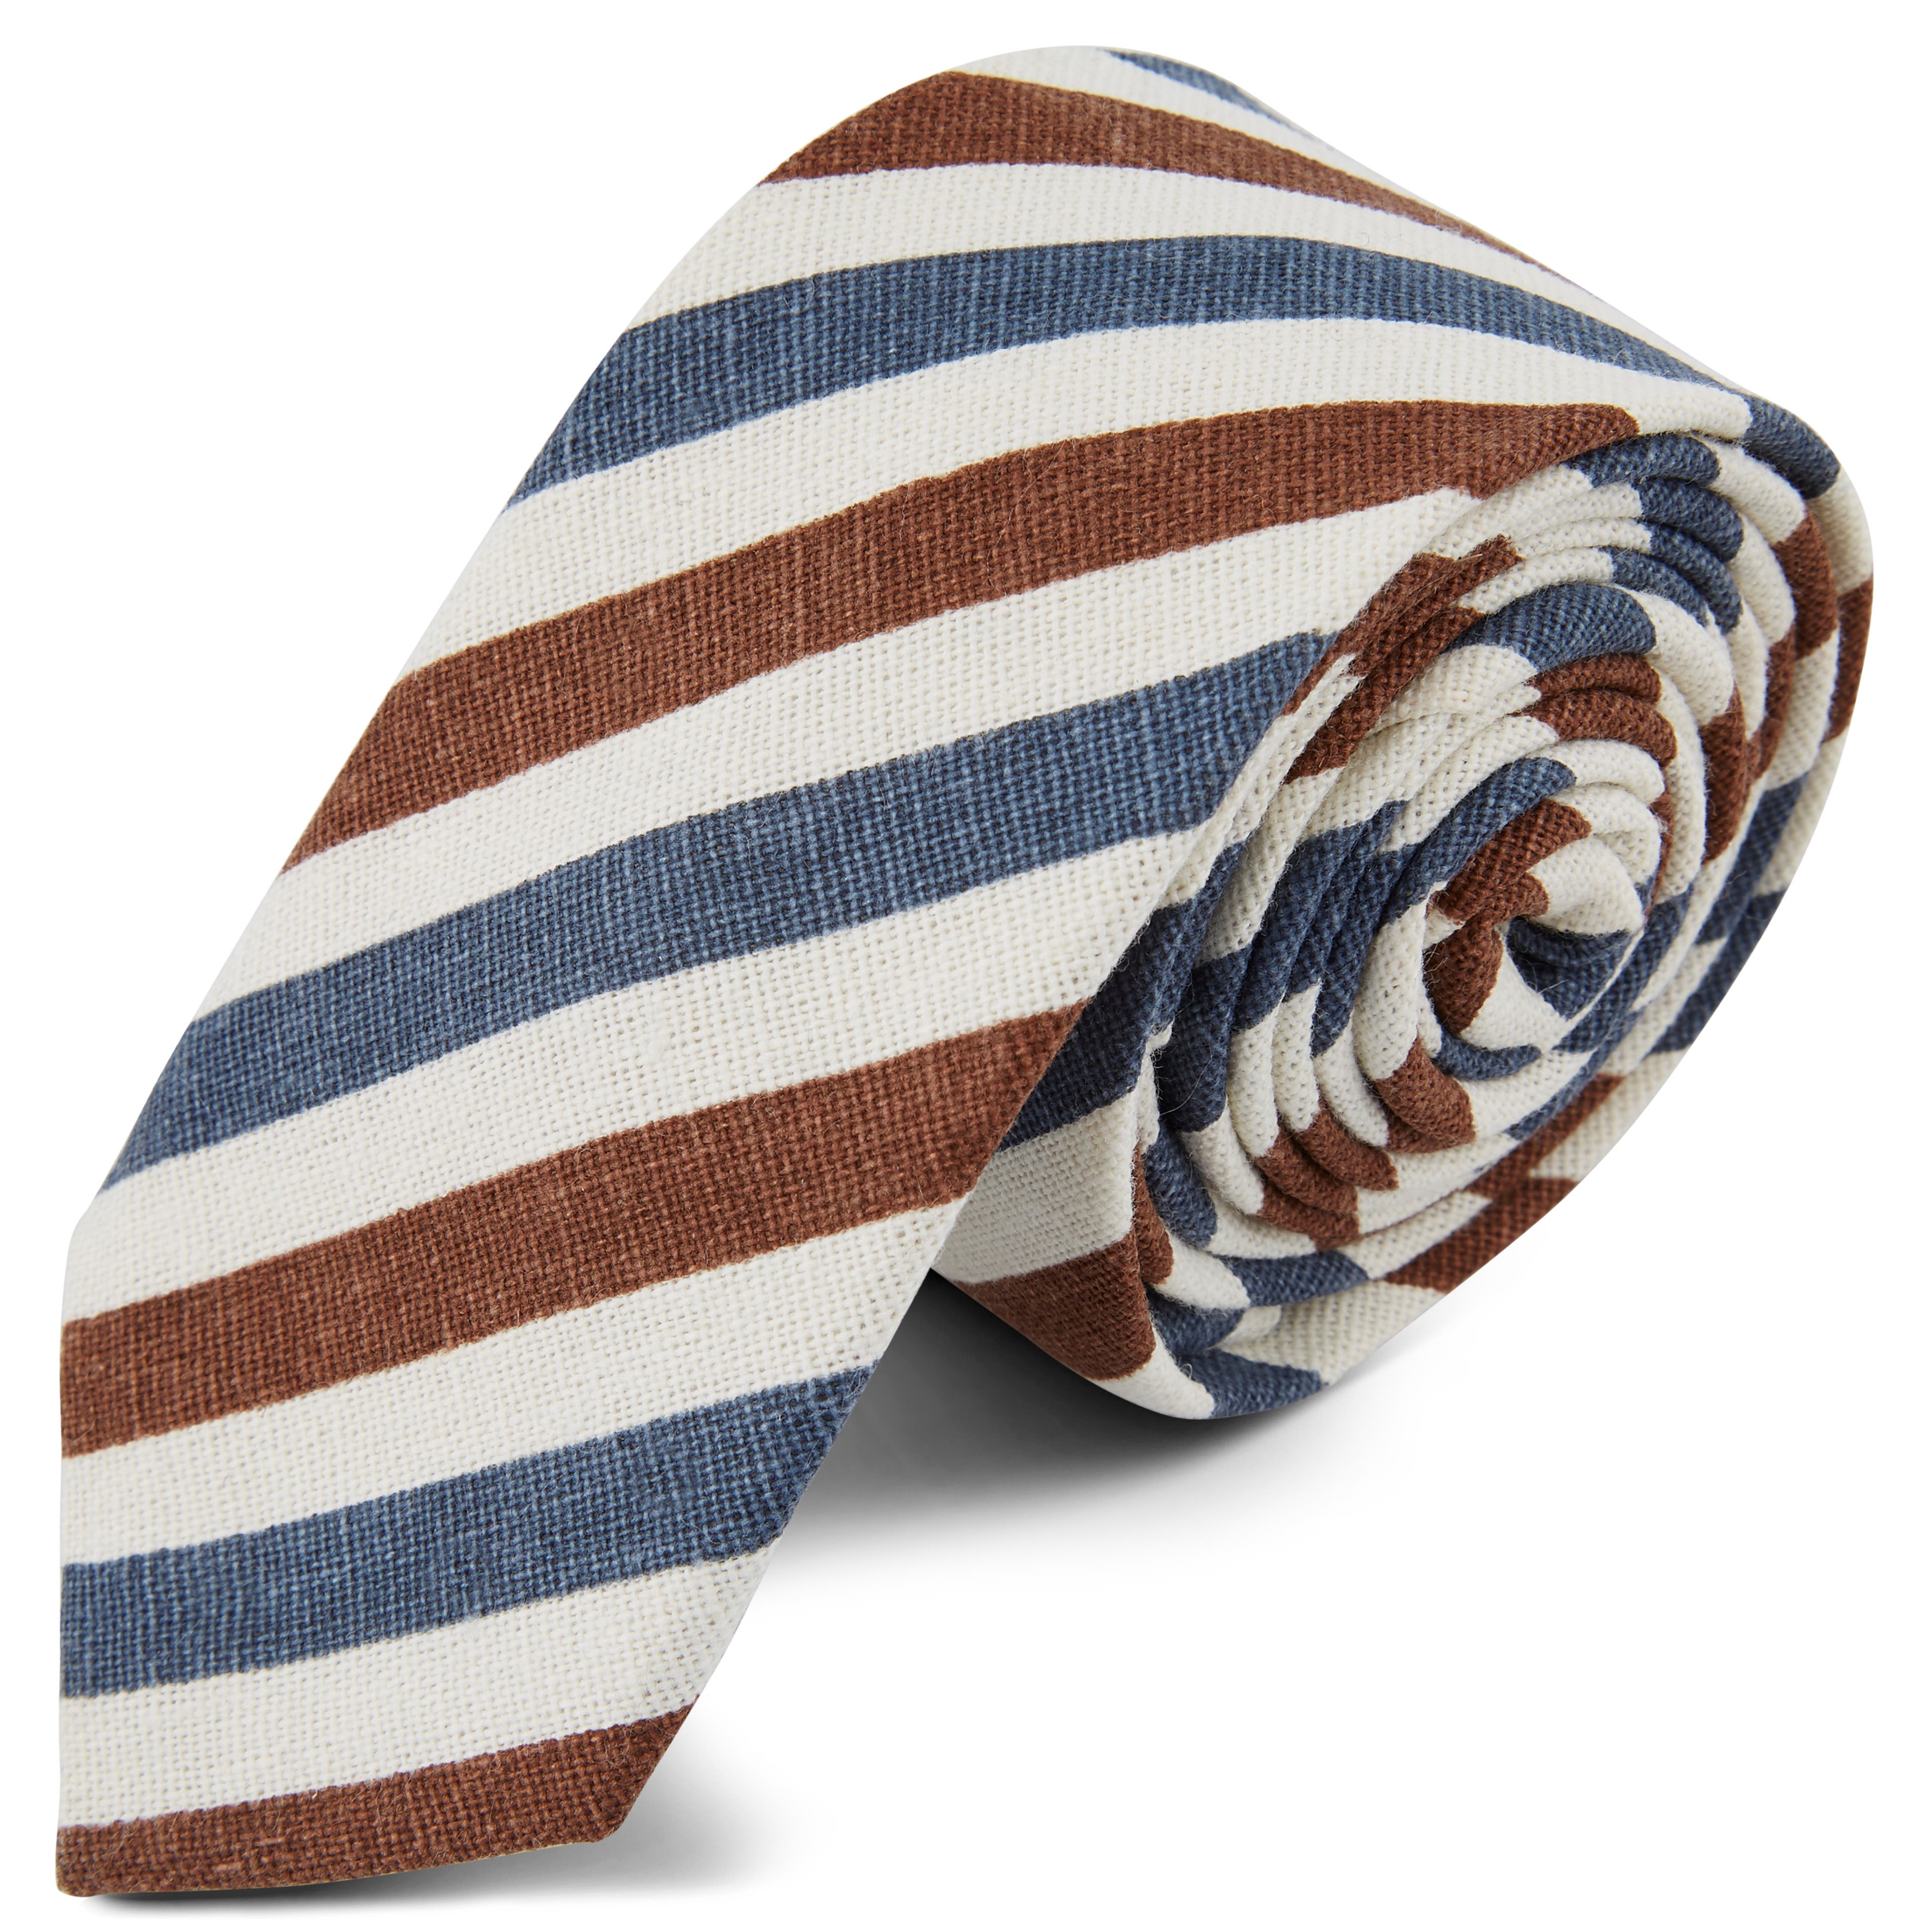 Kék és barna csíkos nyakkendő